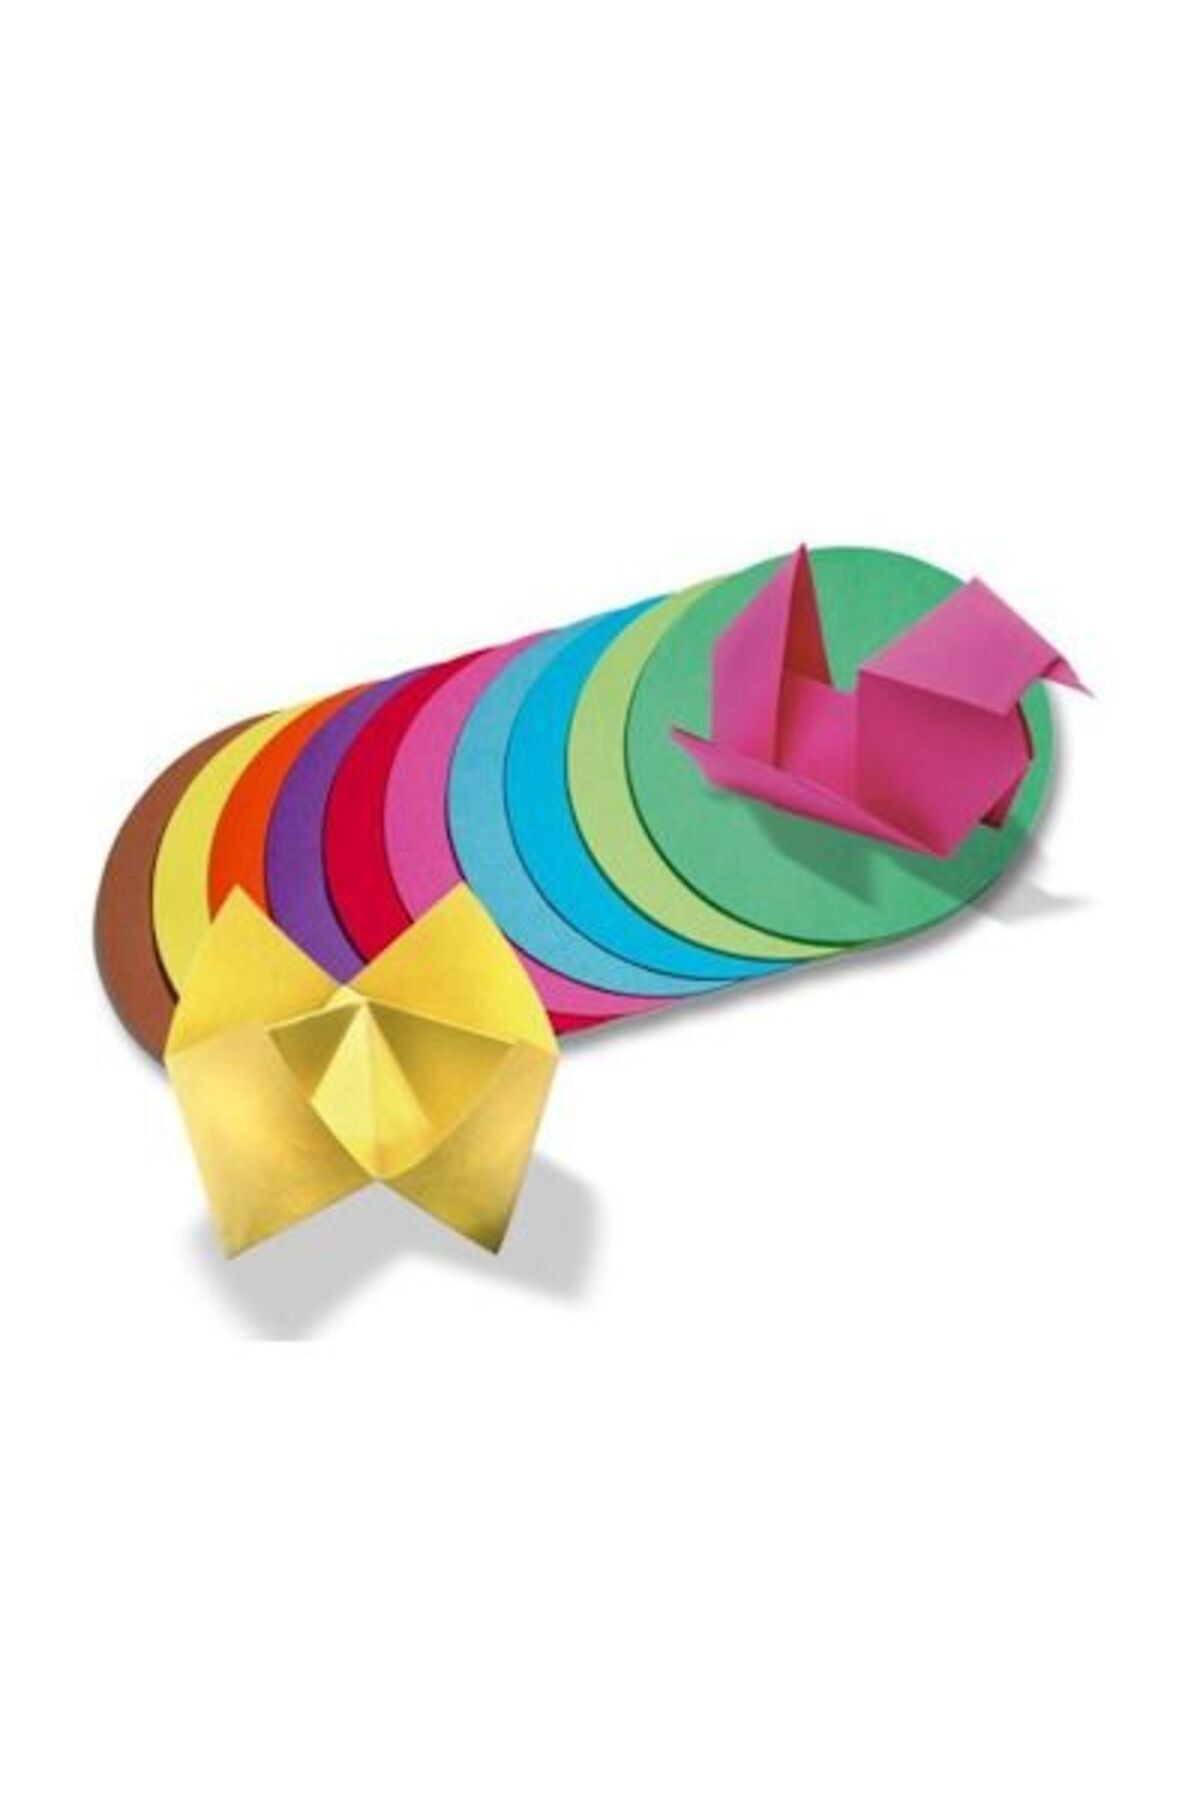 Folia Yuvarlak Origami Kağıdı 10 Renk 500 Adet 12 cm. Çap